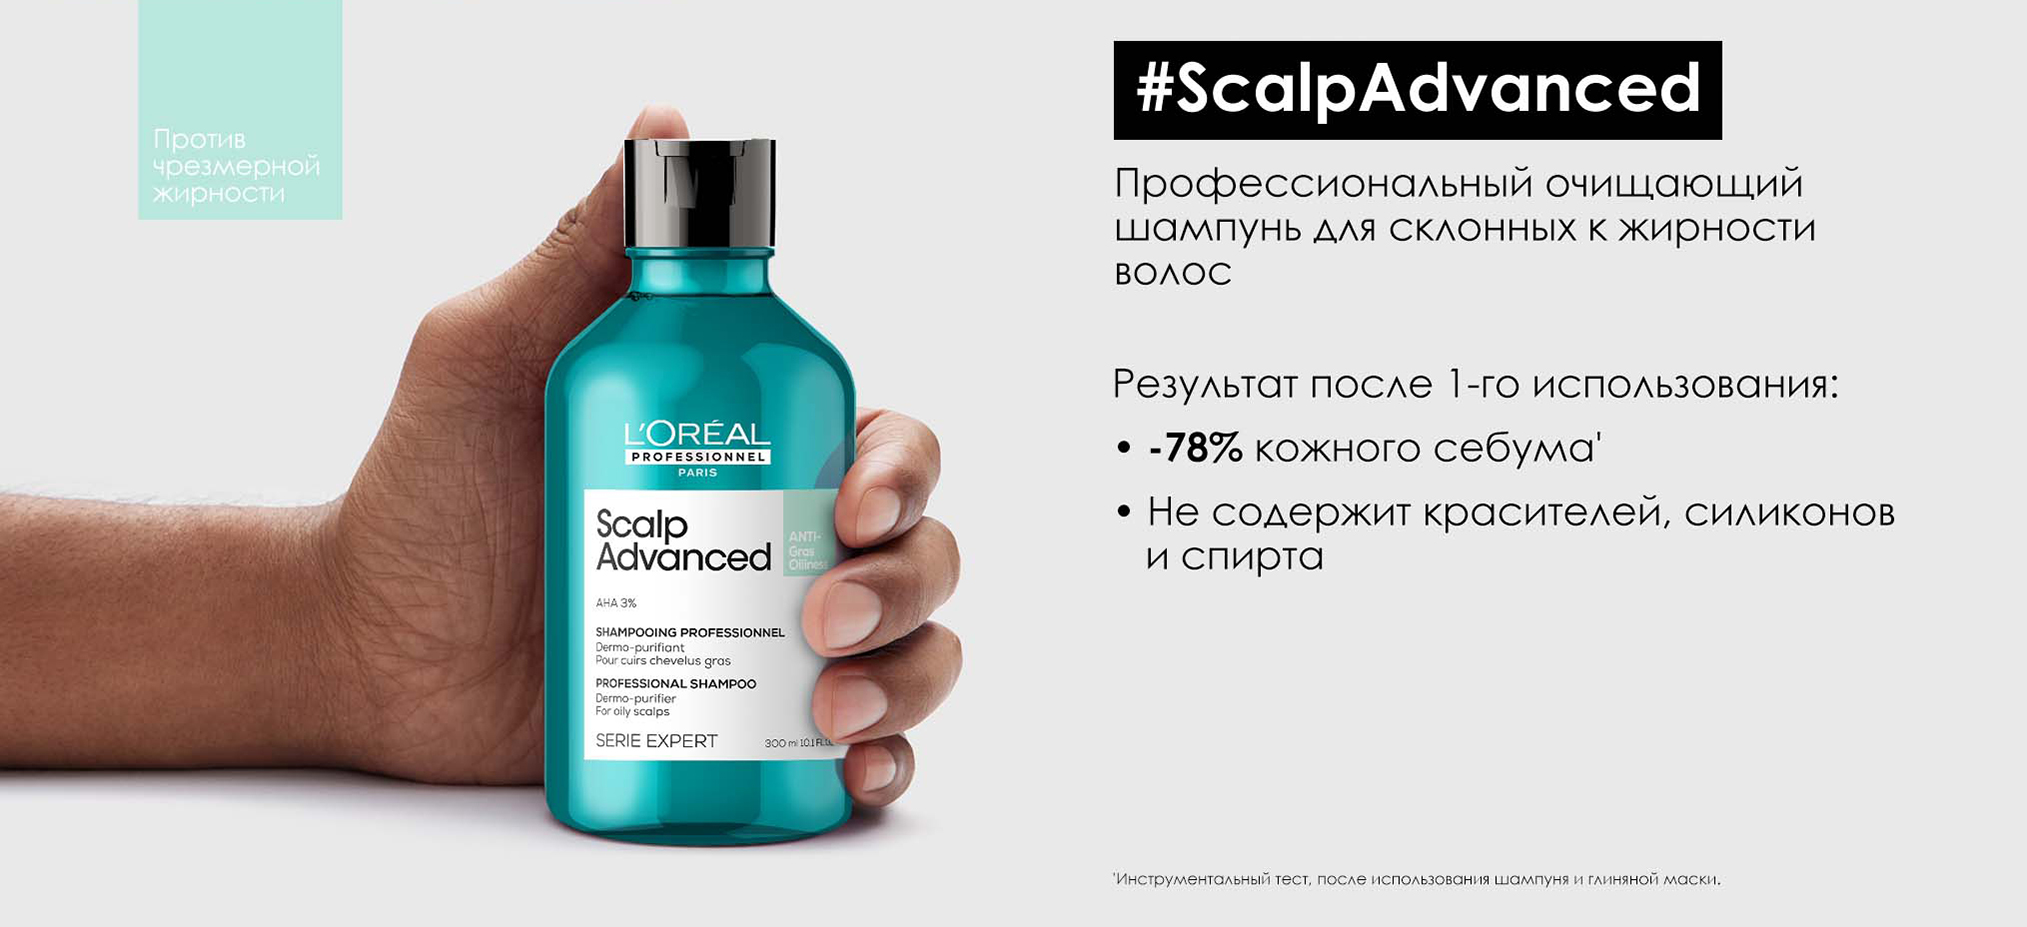 L'Oreal Professionnel Scalp Advanced Anti-Oiliness Shampoo